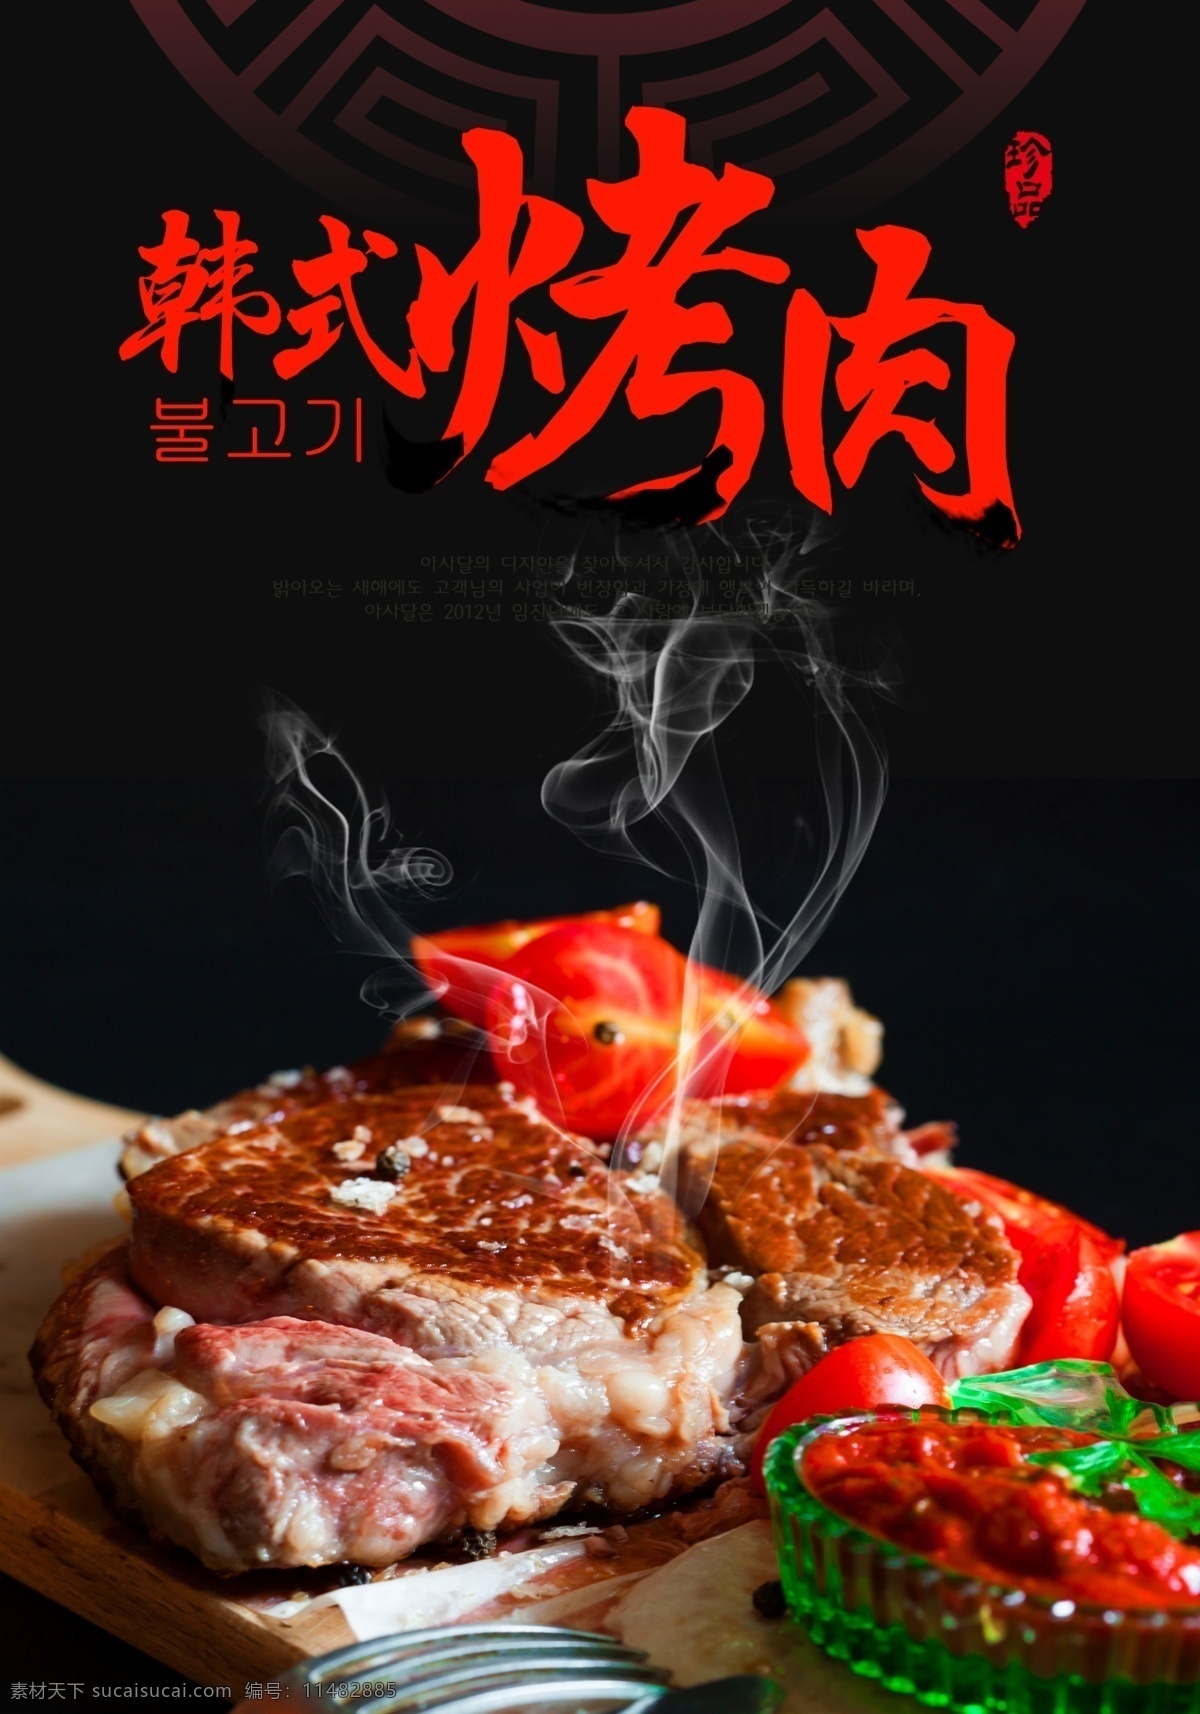 烤肉海报 美食海报 韩式烤肉 美食 美味 餐饮 烤肉 其他背景 底纹边框 背景底纹